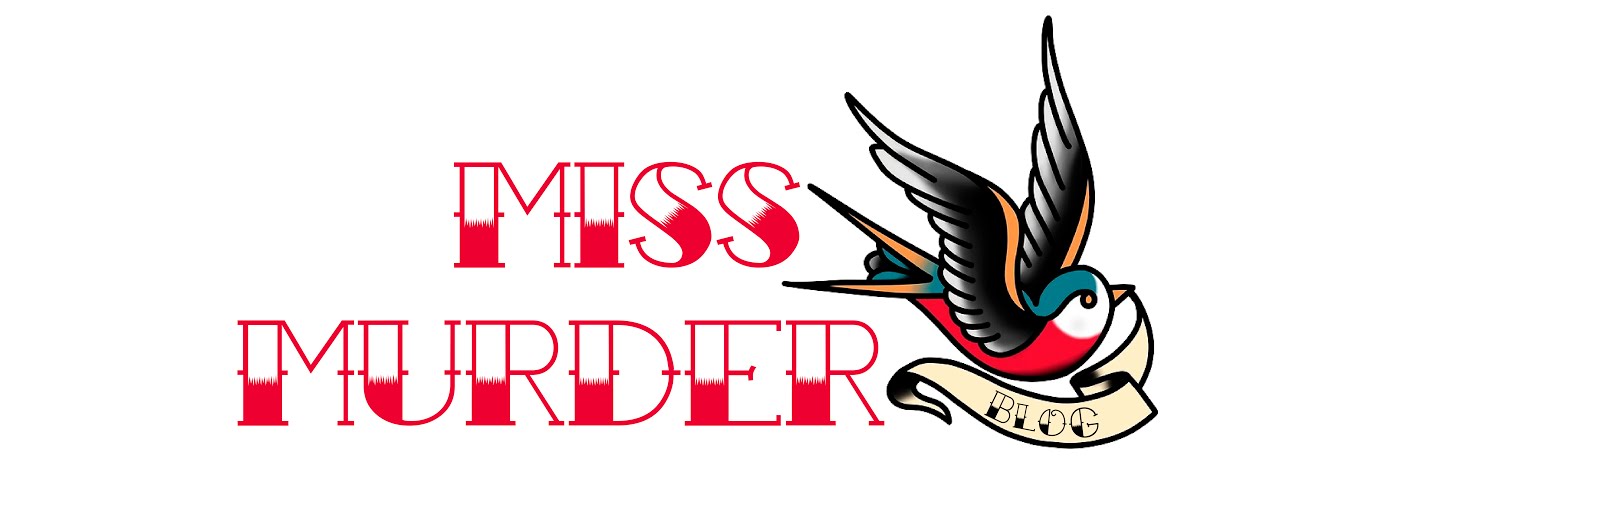 Miss Murder Blog